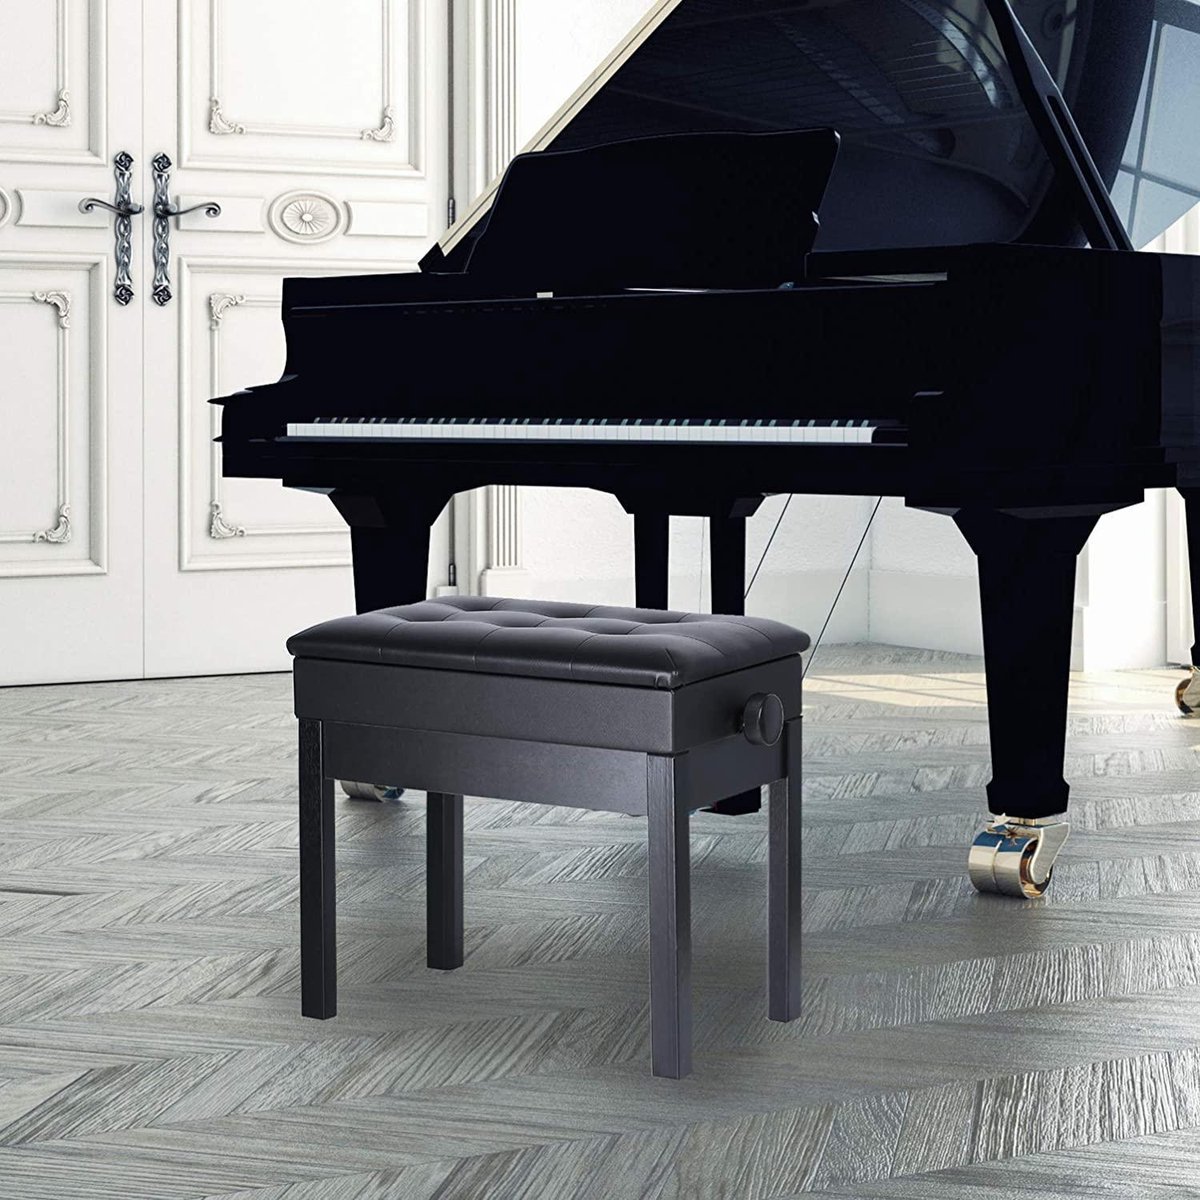 Tabouret de Piano Pliable Ergonomique Tabouret de Piano avec Tabouret Piano  Piano Box for la Pratique Tabouret Piano Seul Piano pour pratiquer Le Piano  (Color : Black, Size : 30x45x51cm) : 